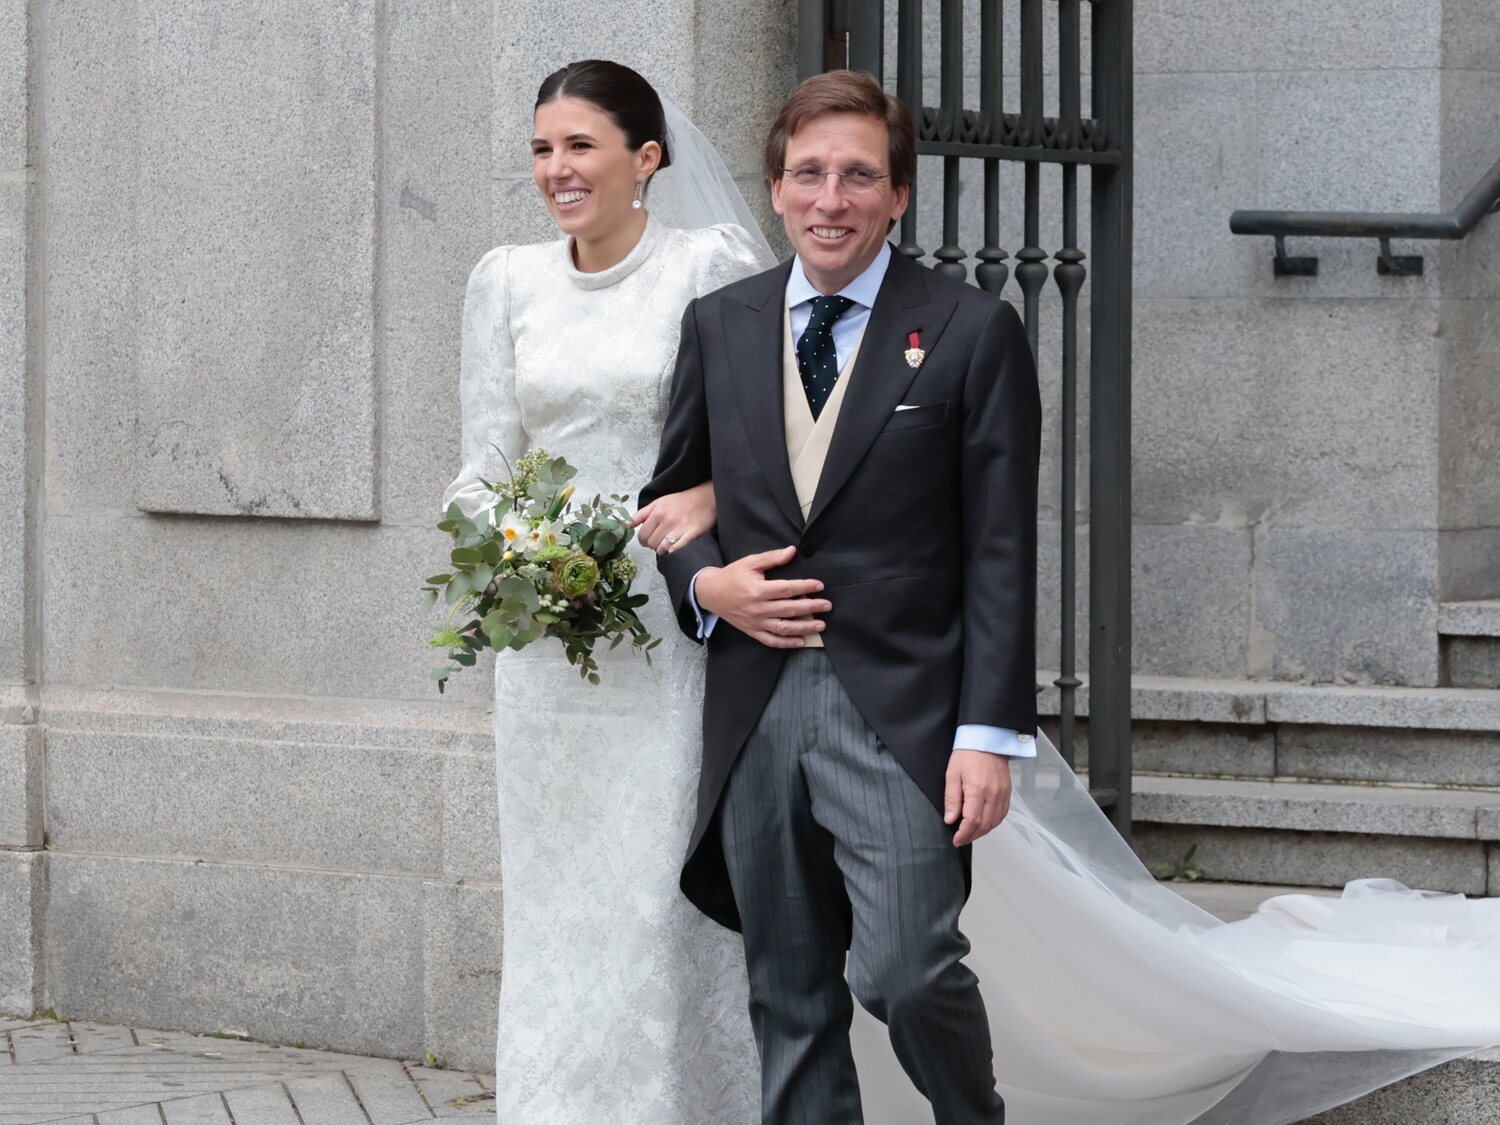 José Luis Martínez-Almeida y Teresa Urquijo celebran su boda: ¿Cuál es su historia de amor?